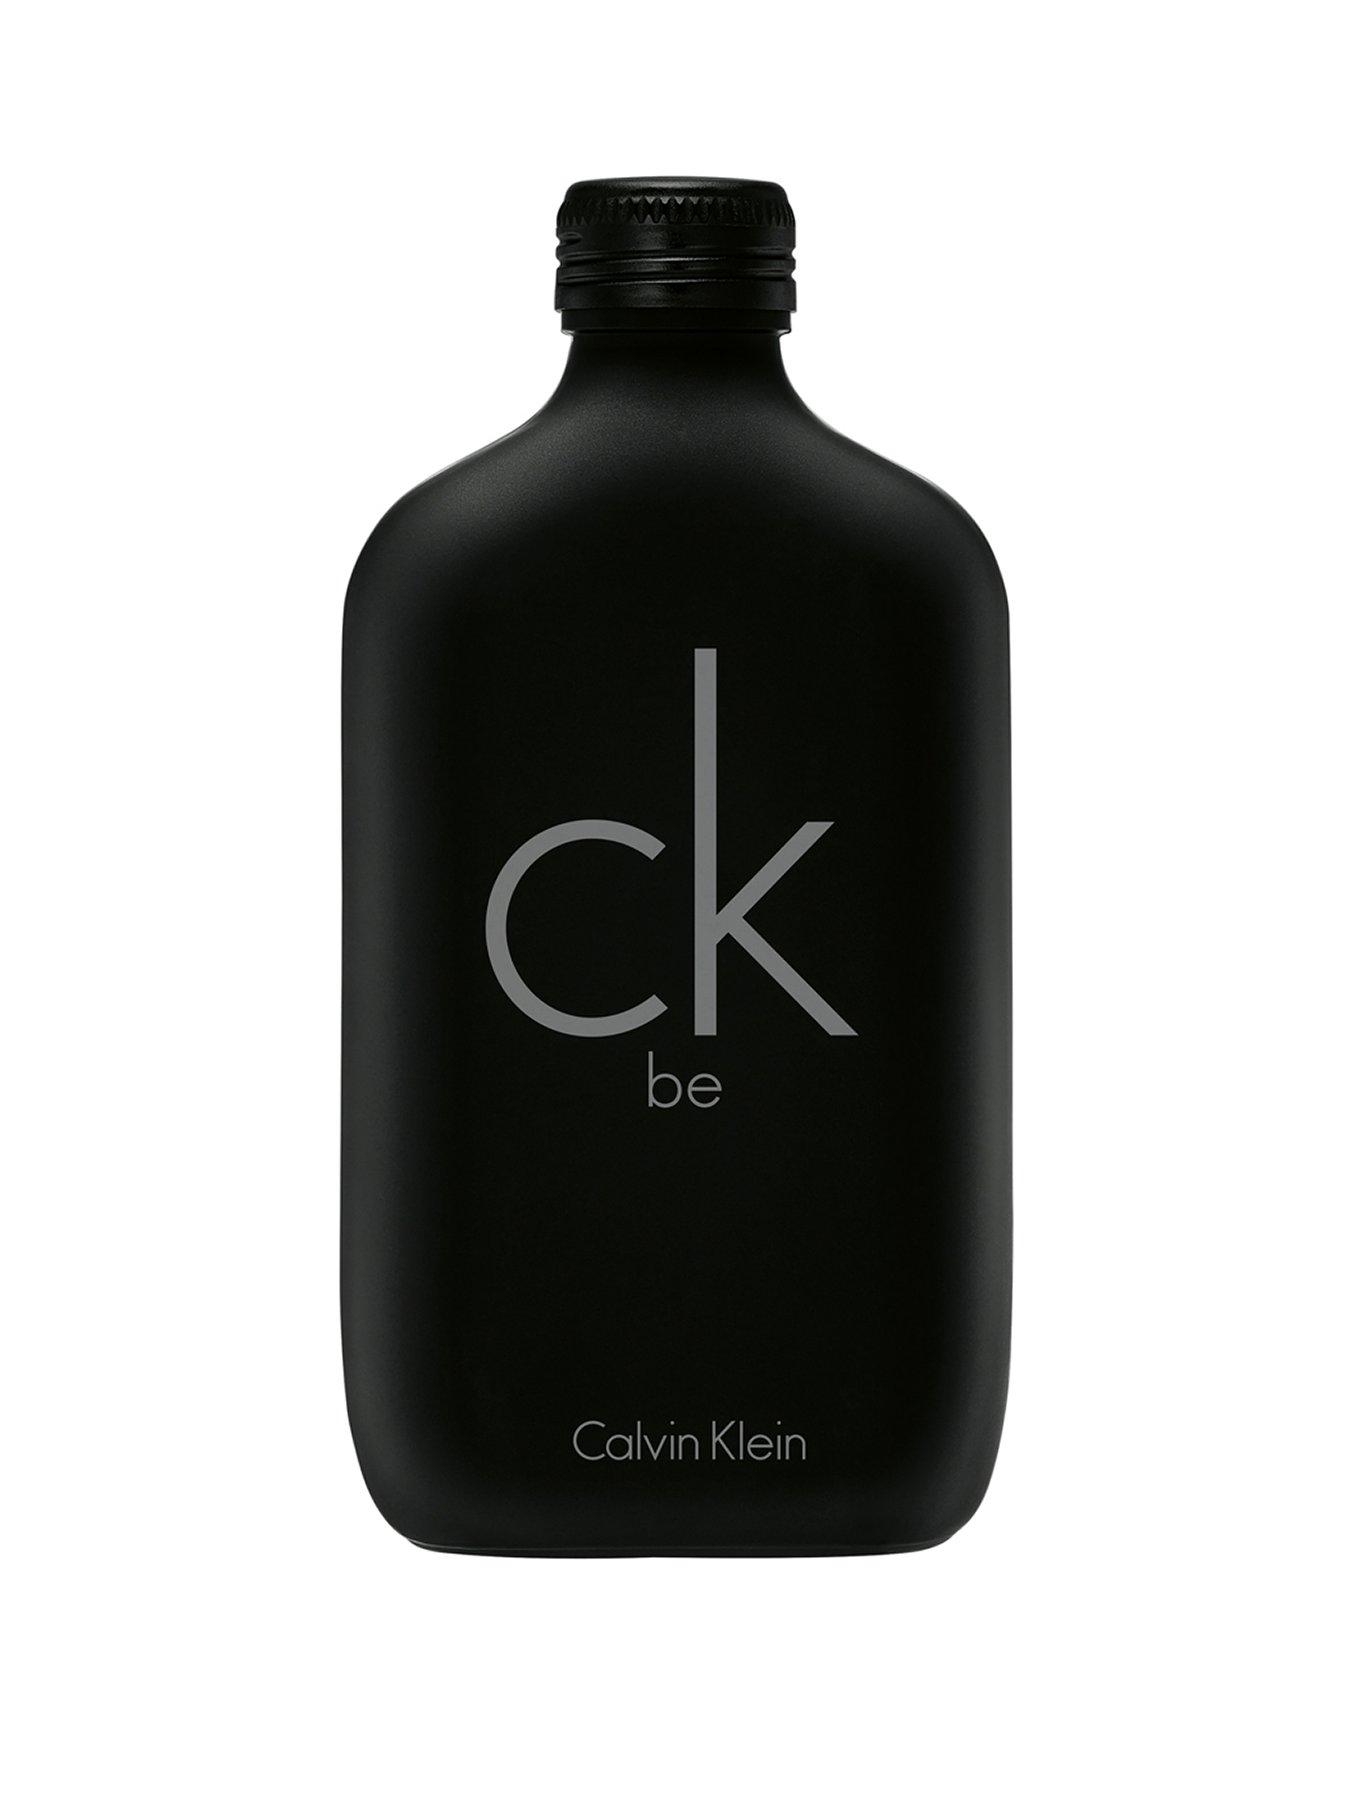 Calvin Klein CK Be Unisex Eau de Toilette - 50ml